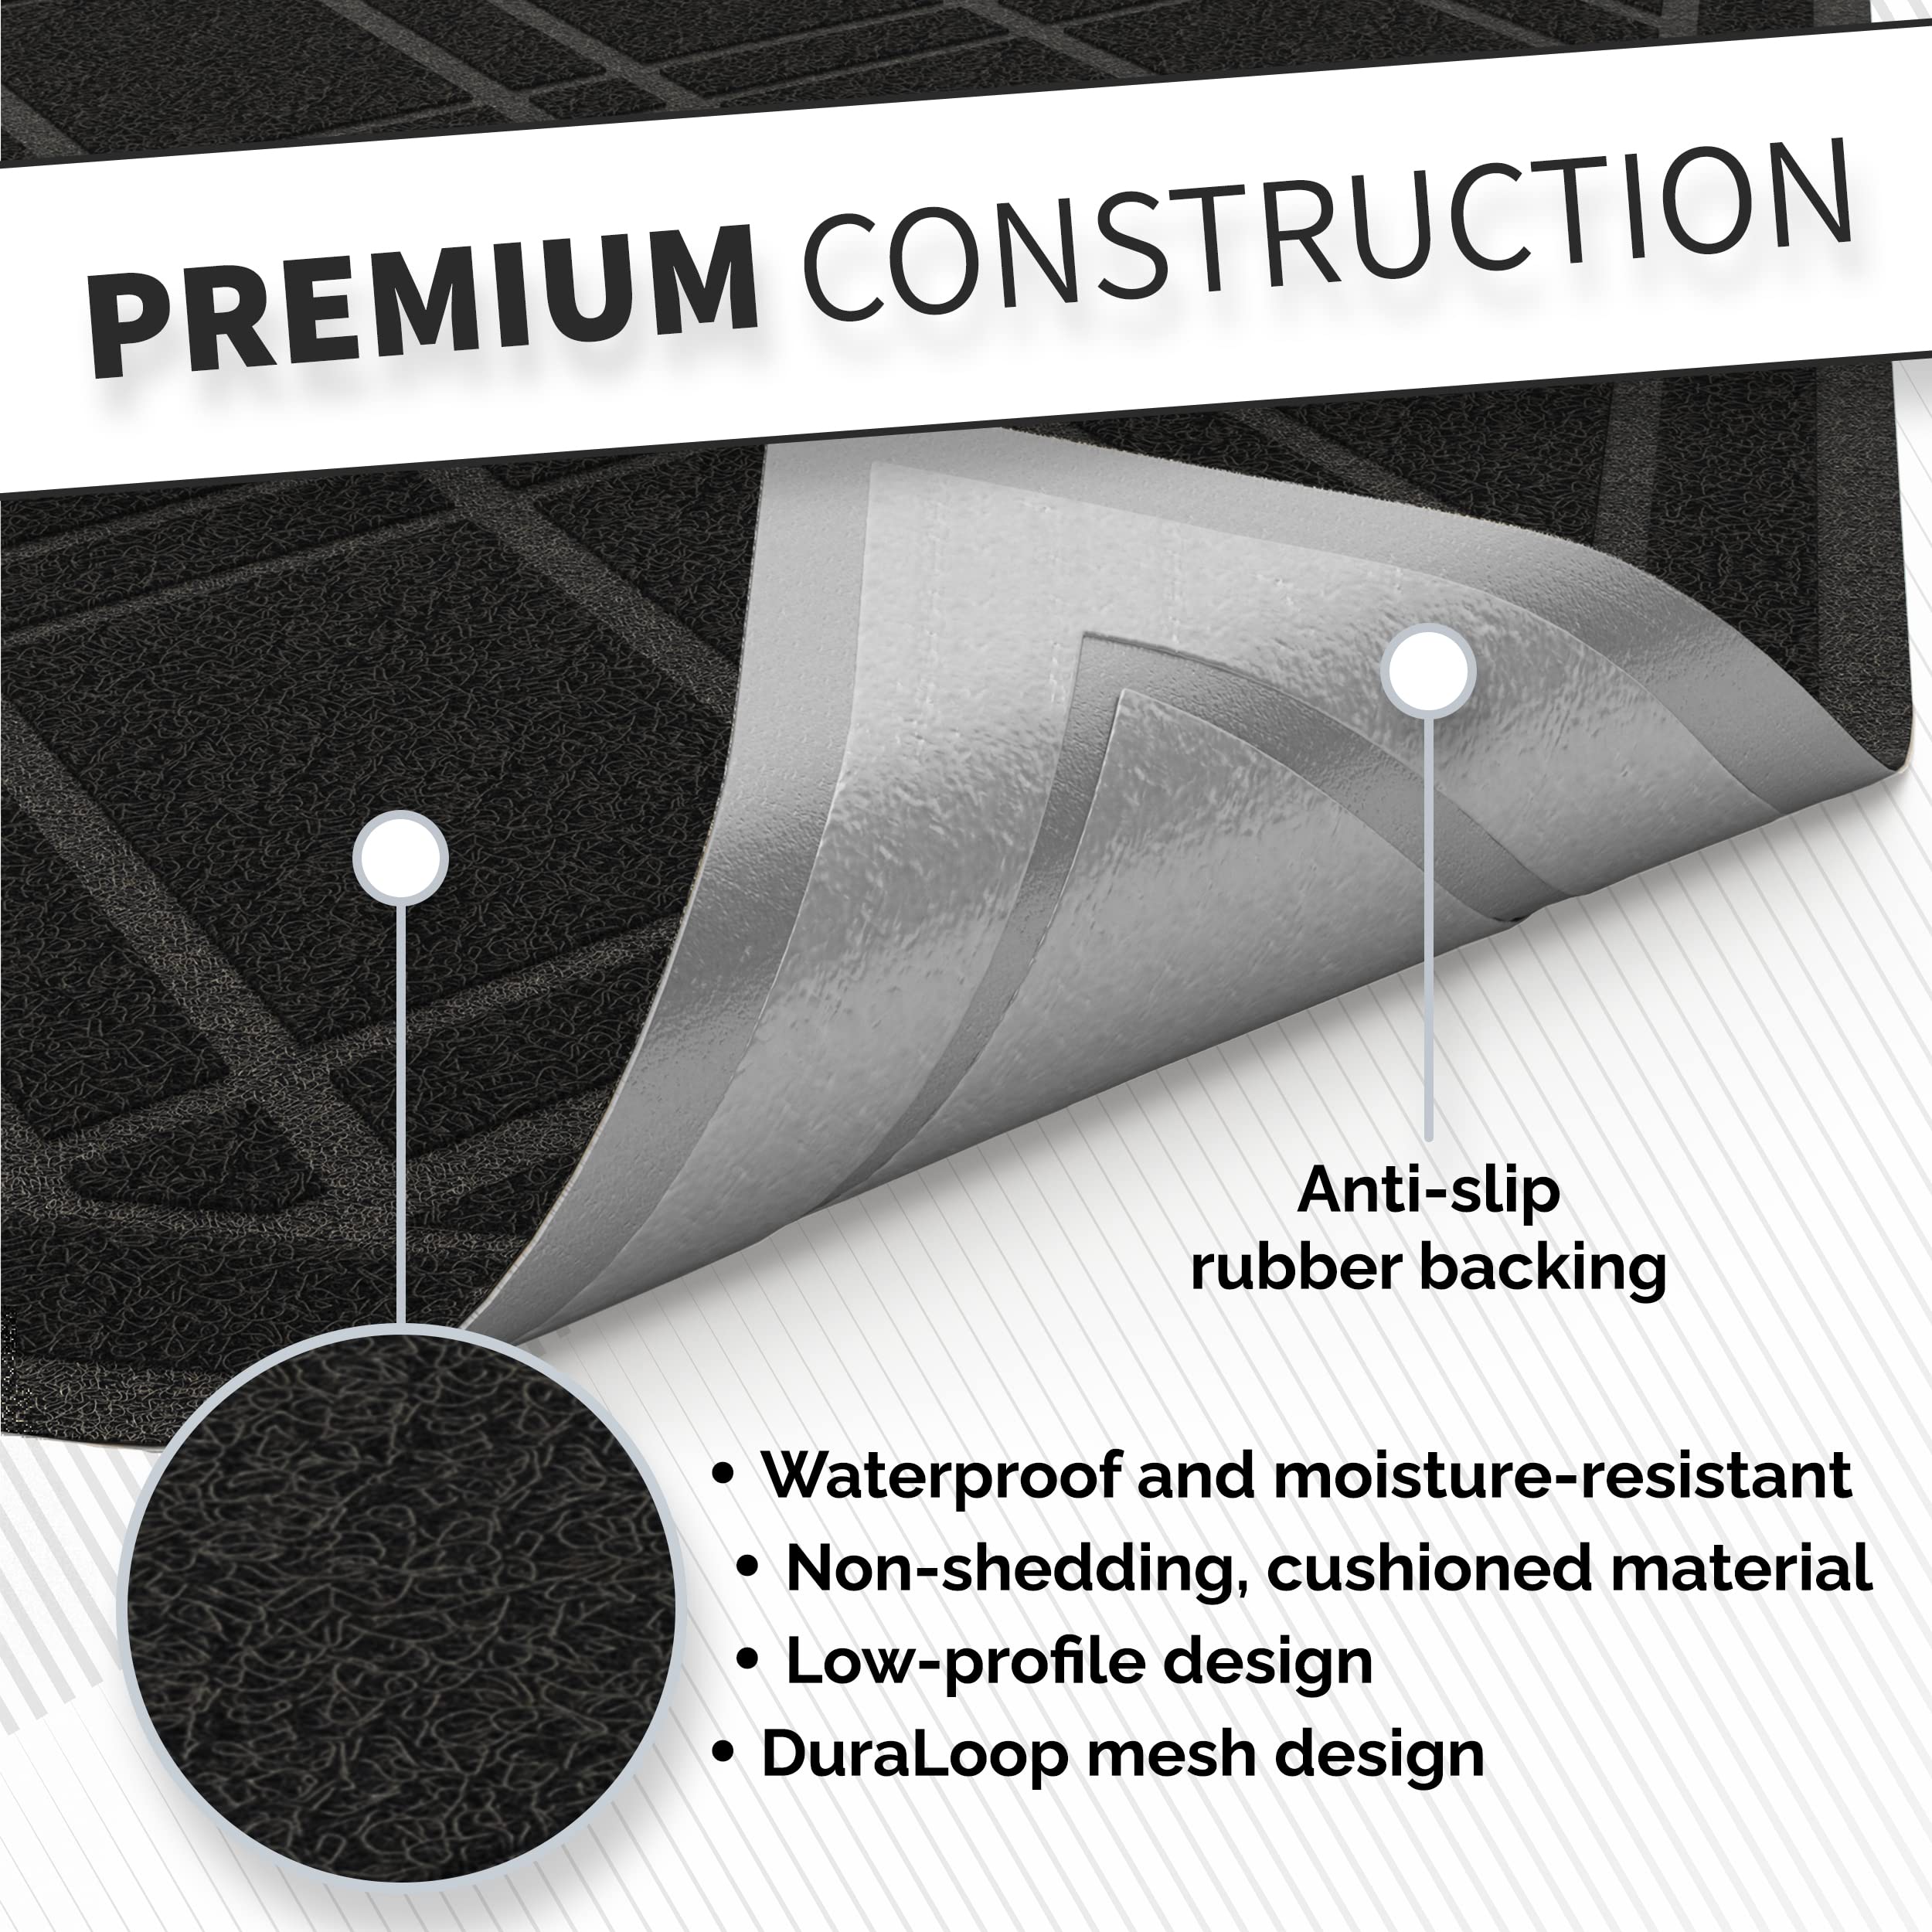 SlipTogrip Universal Door Mat, Plaid Design - Black, 42 x 35 - Anti Slip, Durable & Washable, Outdoor & Indoor Floor Welcome Mat